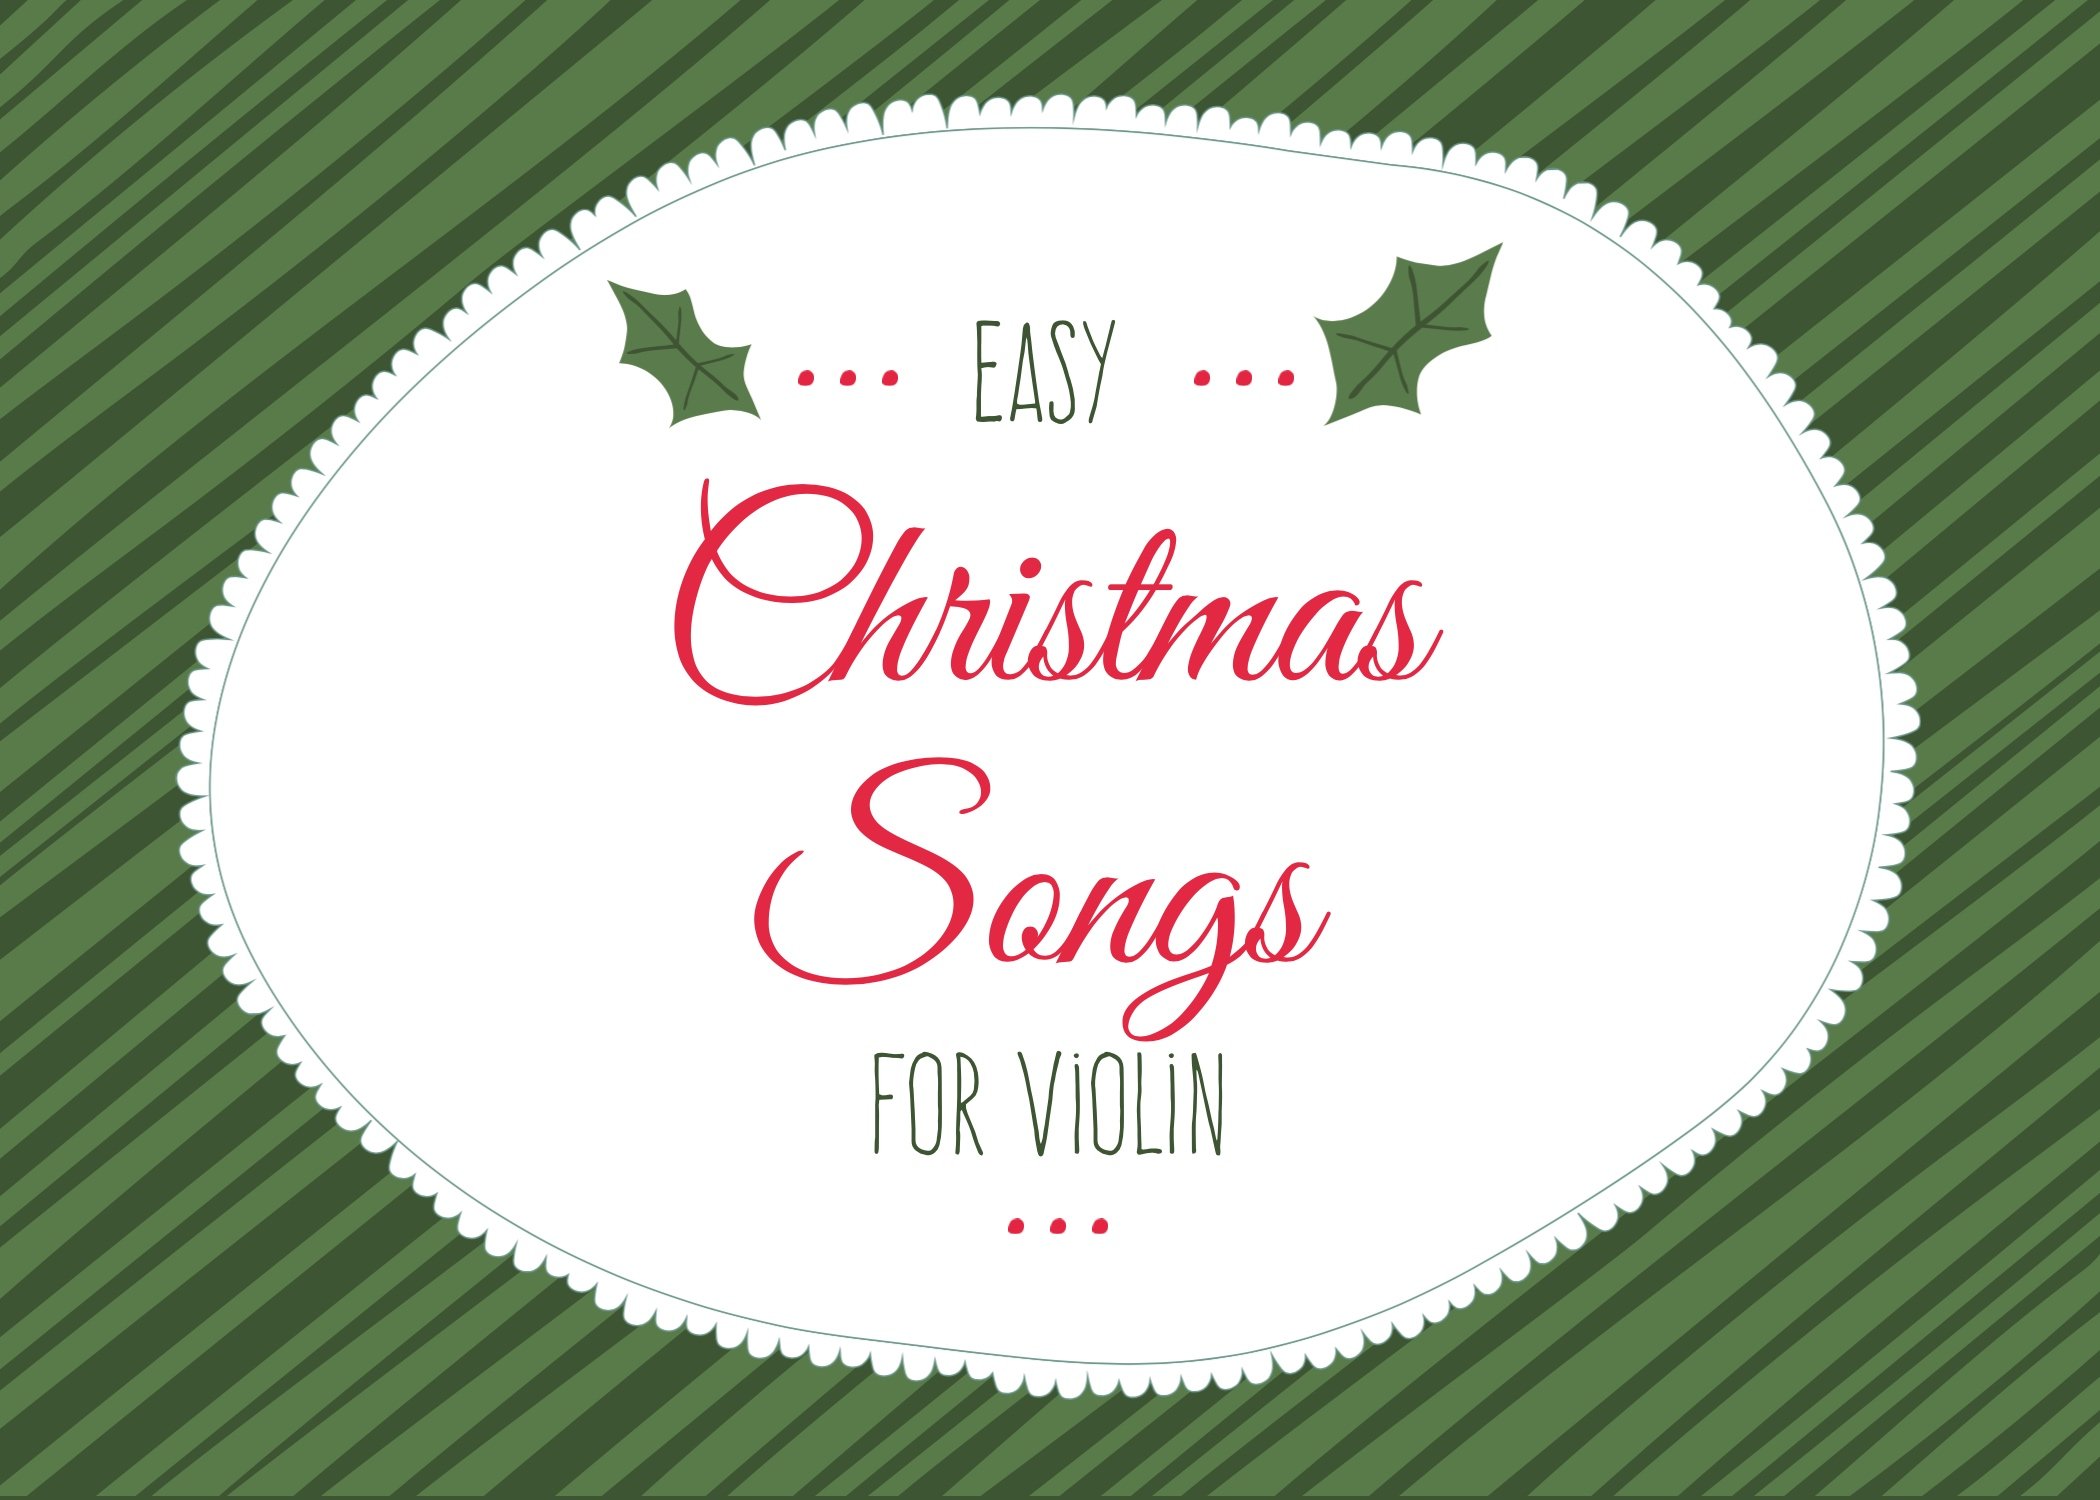 https://images.squarespace-cdn.com/content/v1/554545e3e4b0325625f33fa6/7709d15c-b24c-4450-b07f-eef4a688ee97/easy+Christmas+songs+for+violin.jpg